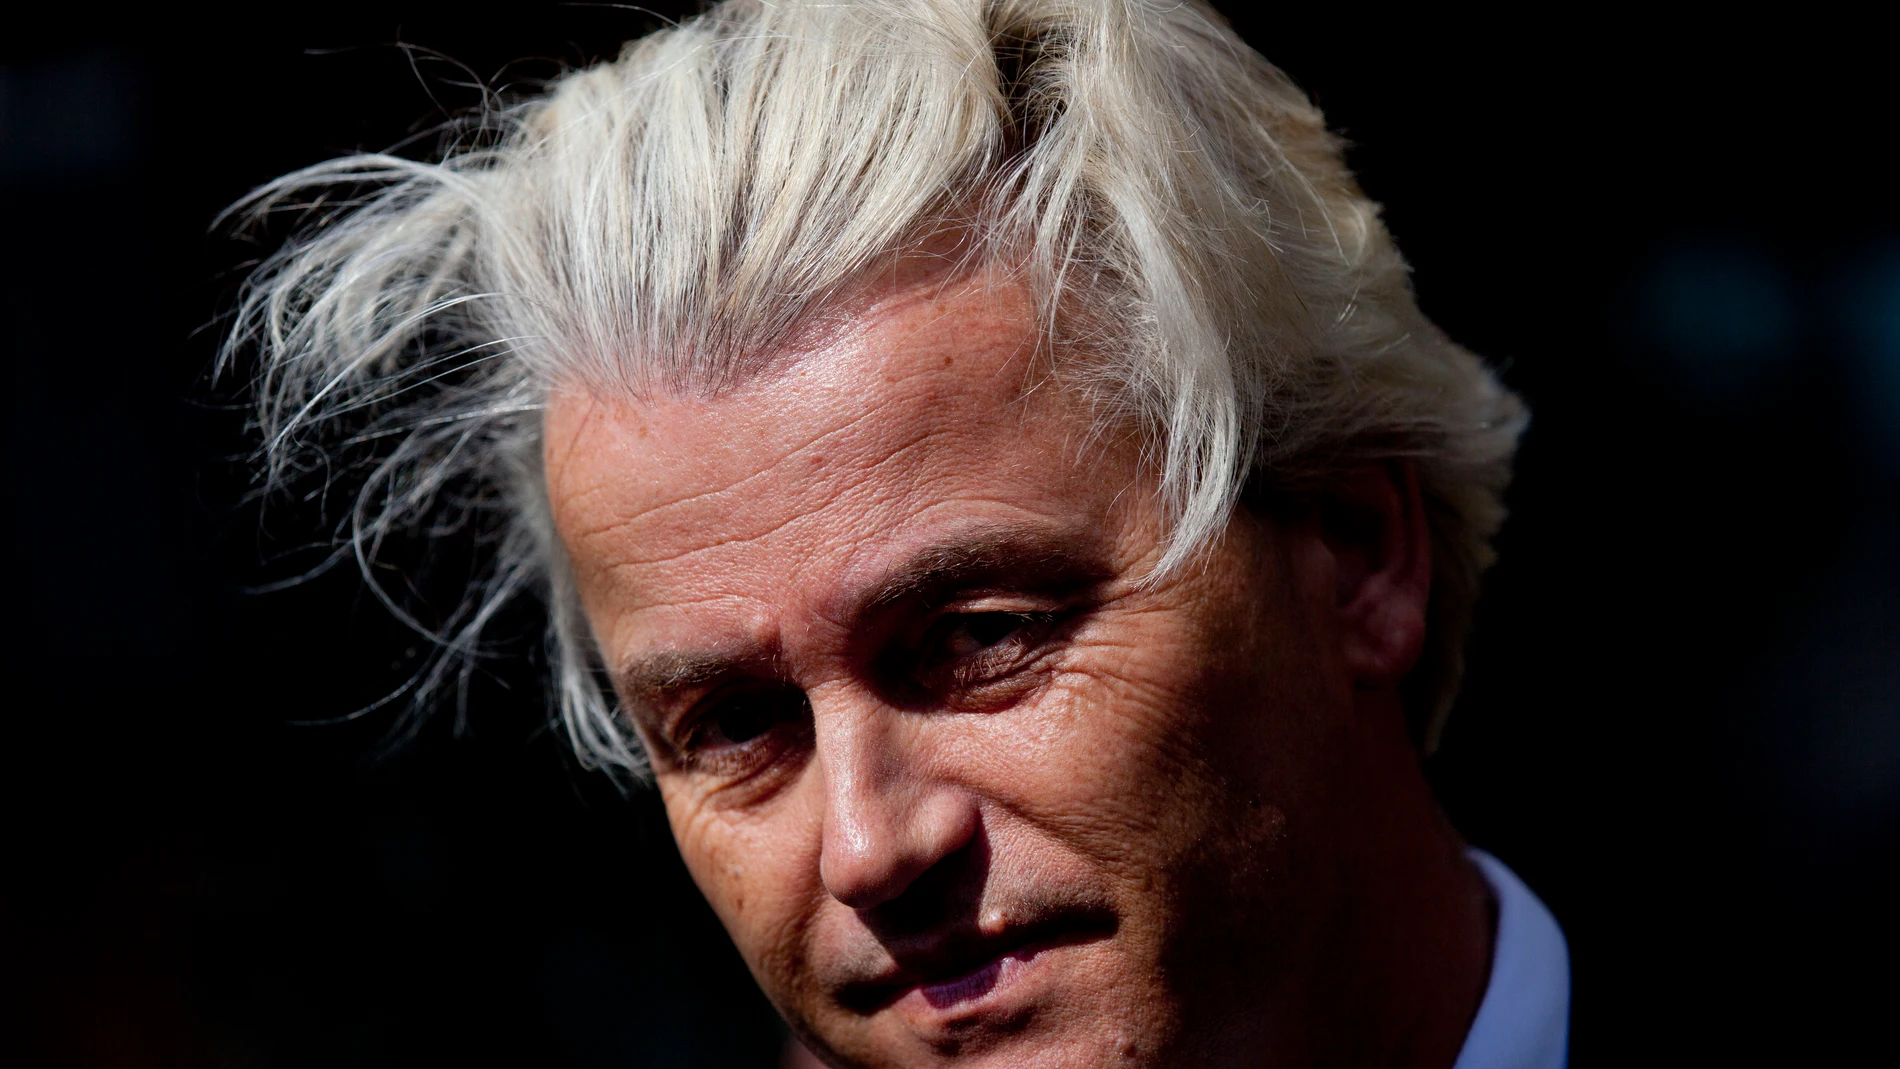 Geert Wilders obtuvo una victoria masiva en las elecciones holandesas y está en la primera posición para formar la próxima coalición de gobierno y posiblemente convertirse en el próximo primer ministro de los Países Bajos. (Foto AP/Peter Dejong, archivo)